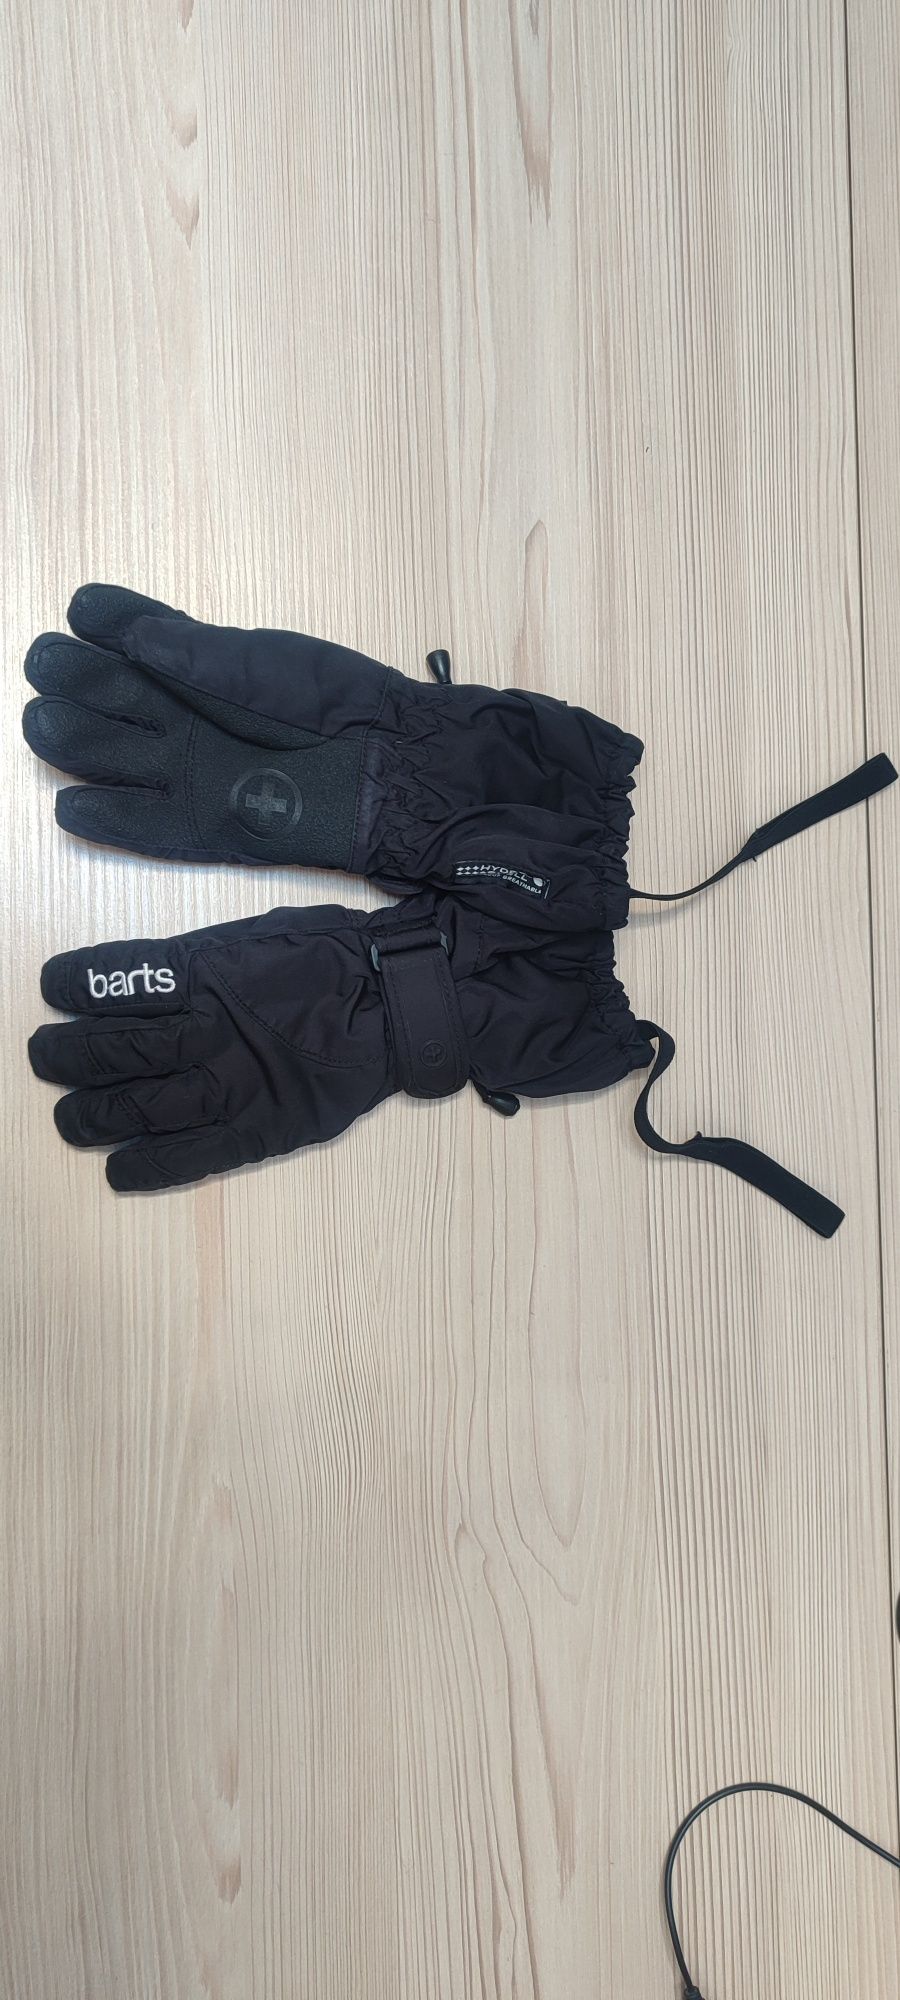 Зимові водонепроникні вітрозахисні горнолижні рукавиці Barts